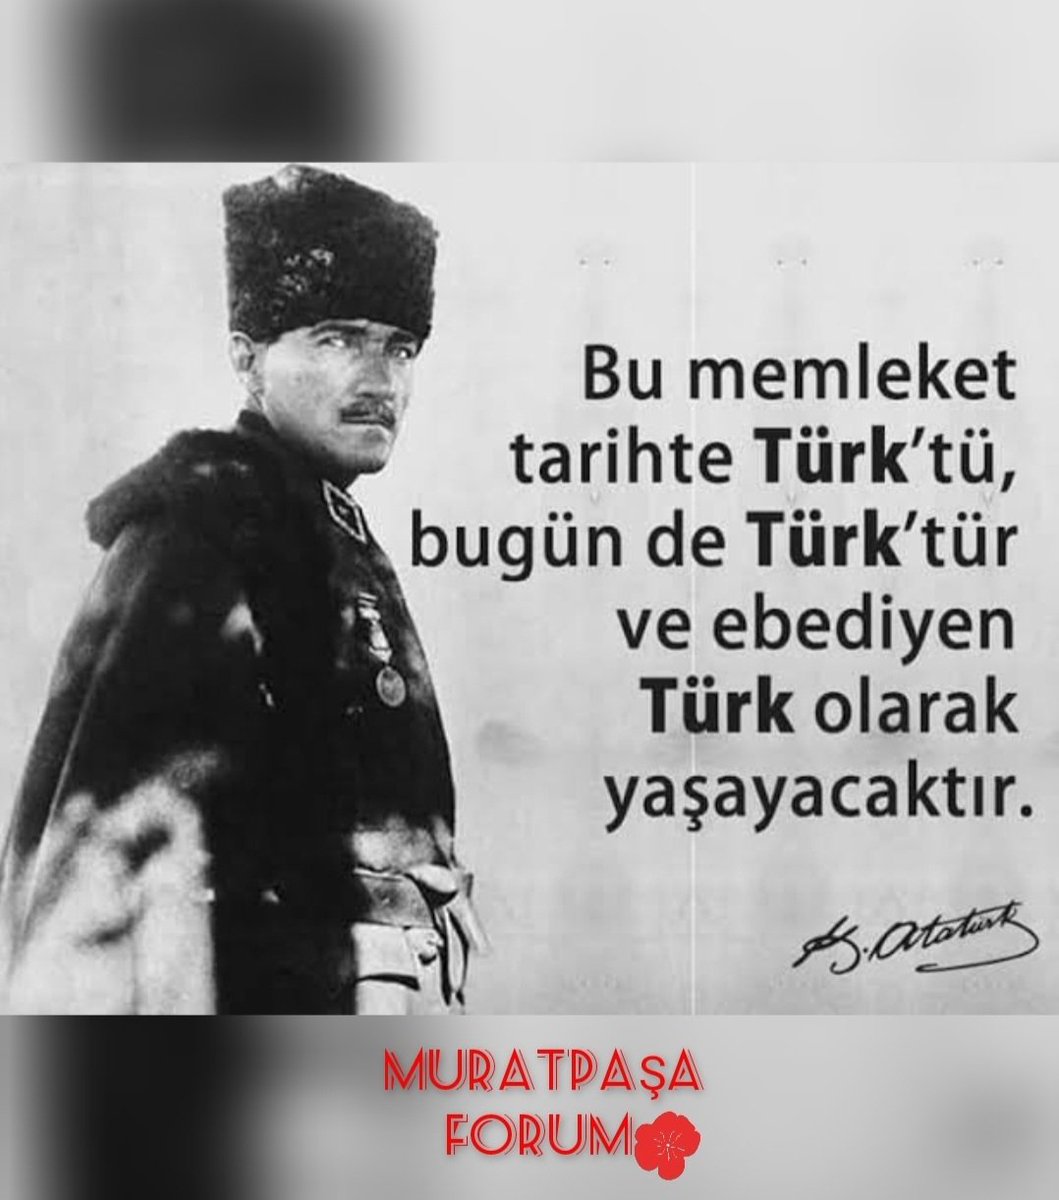 Varlığım, Türk Varlığına Armağan Olsun. Ne Mutlu TÜRK'üm Diyene.! 🇹🇷 #3MAYISTÜRKÇÜLÜKGÜNÜ #MustafaKemalAtatürk ♥️